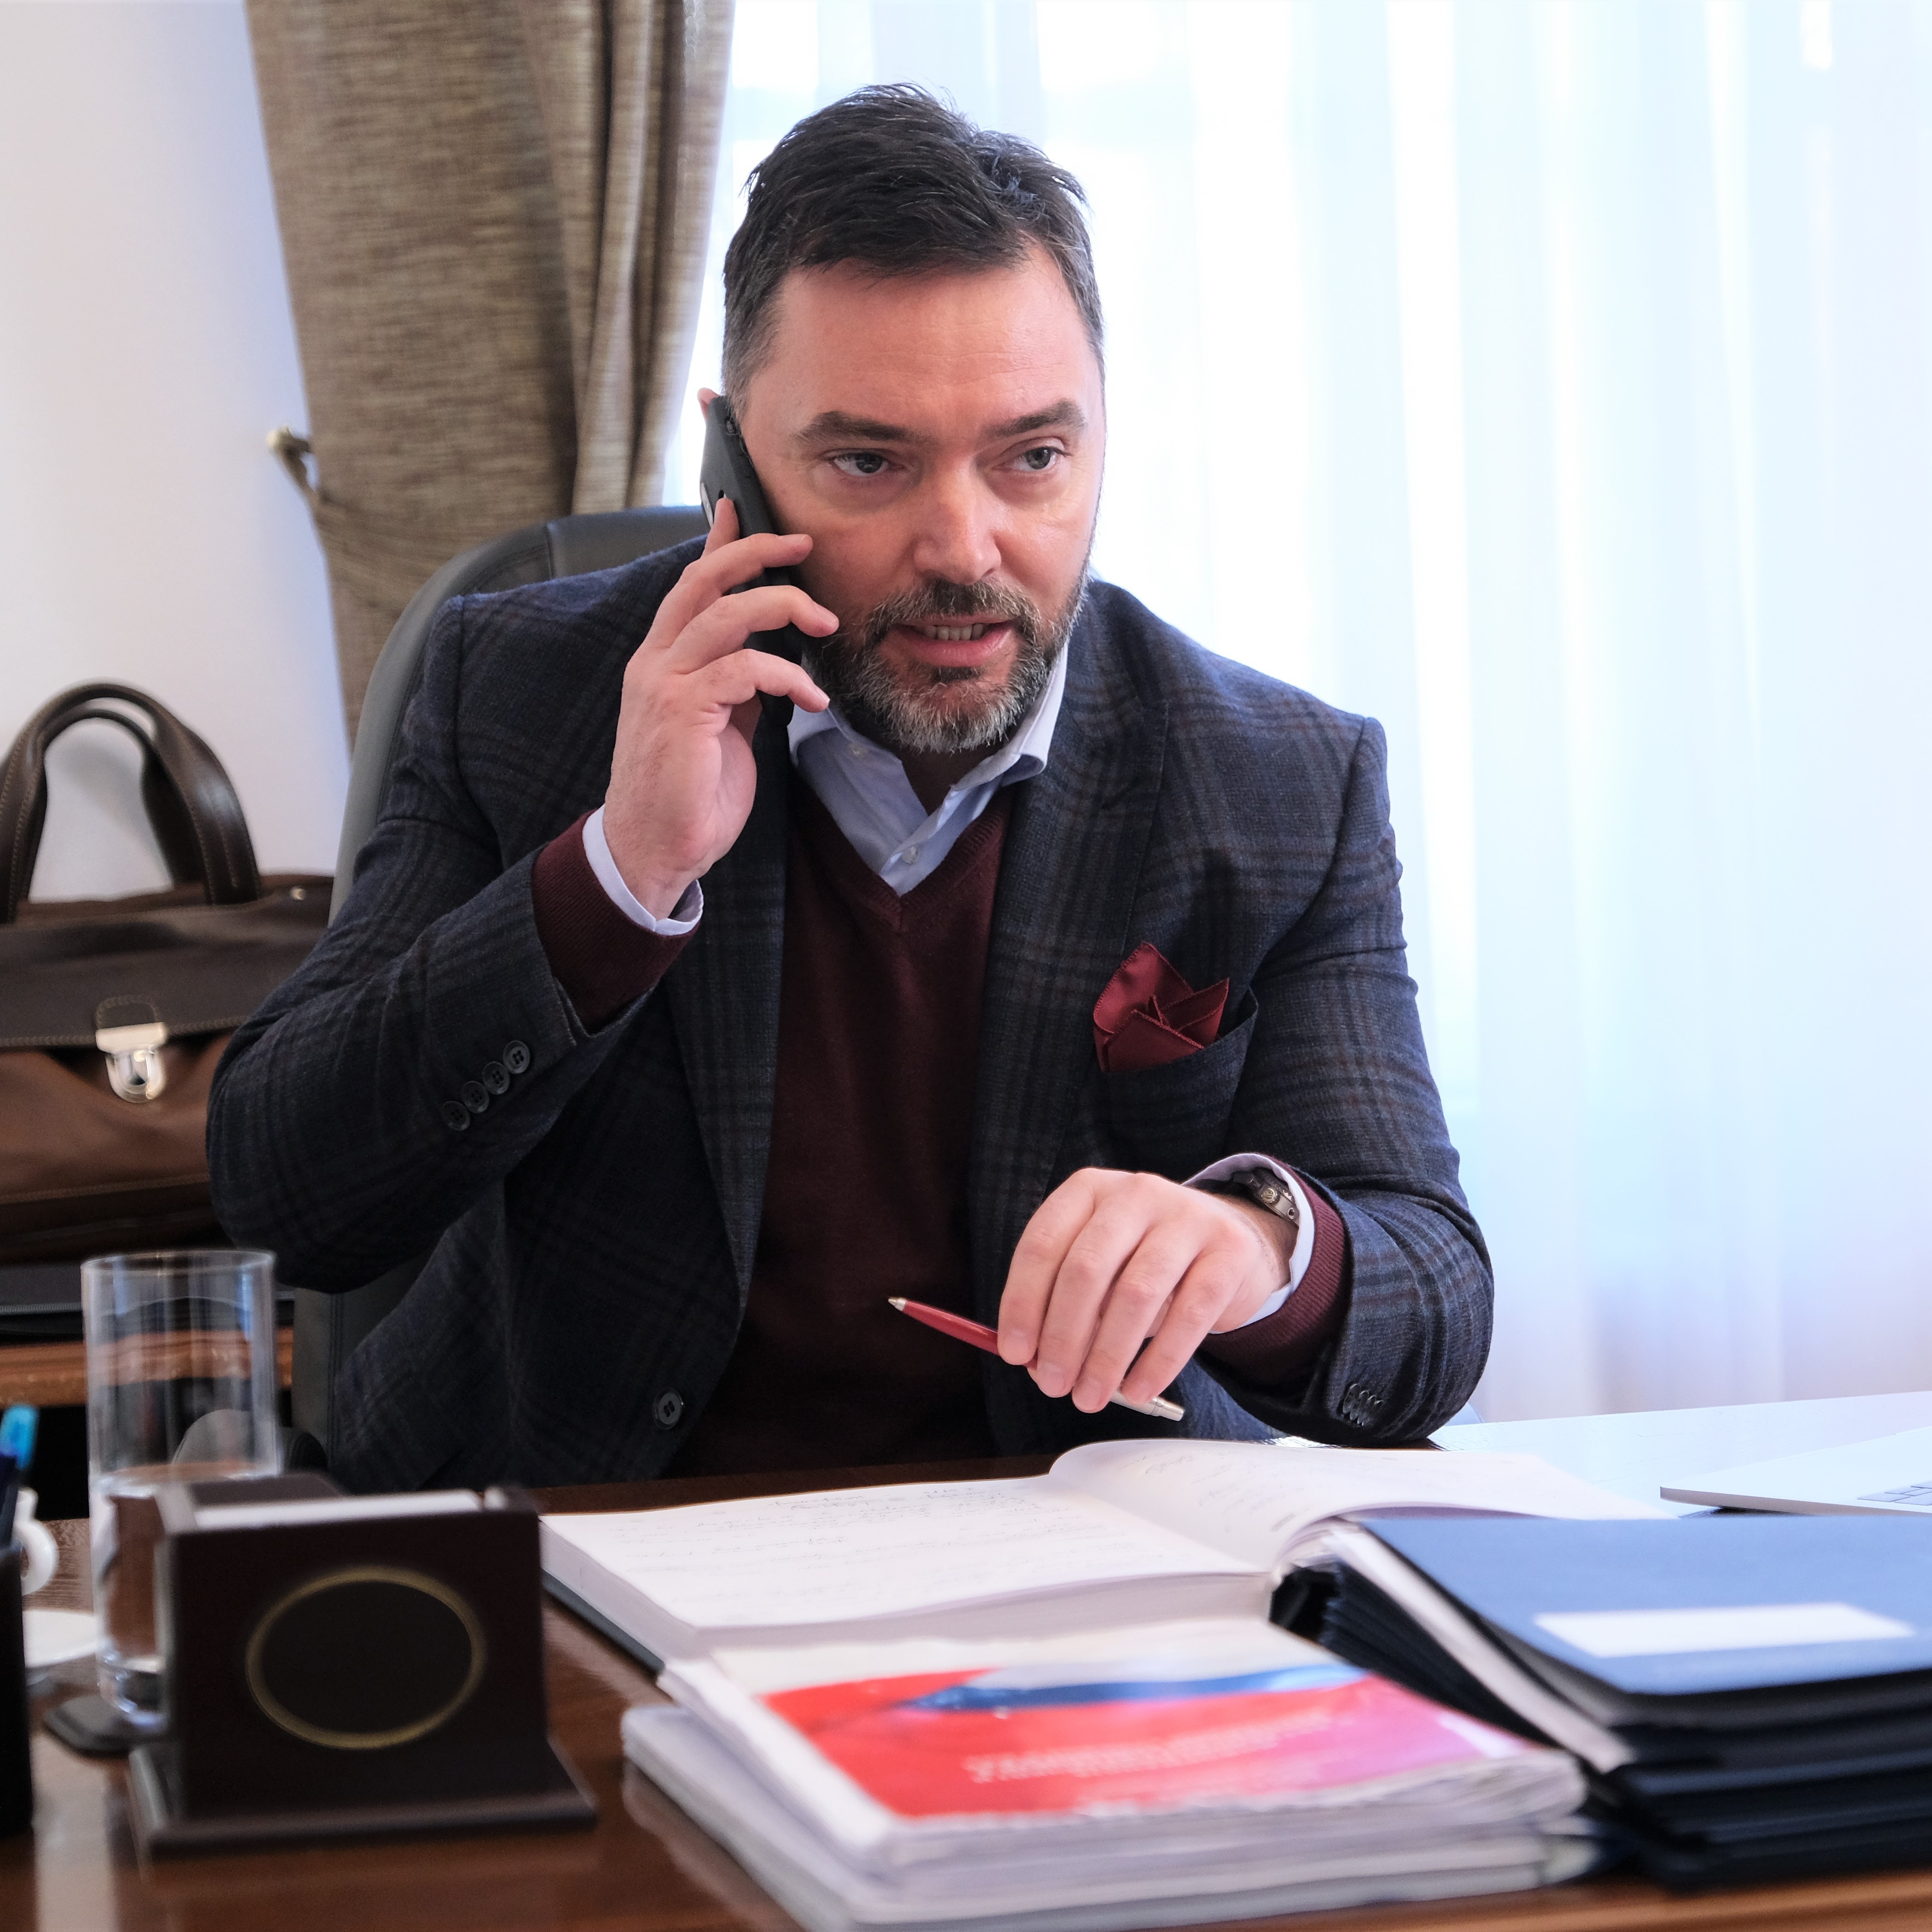 Picture for Министар Кошарац разговарао са хрватским министром Ћорићем о изградњи спорног одлагалишта на Трговској гори